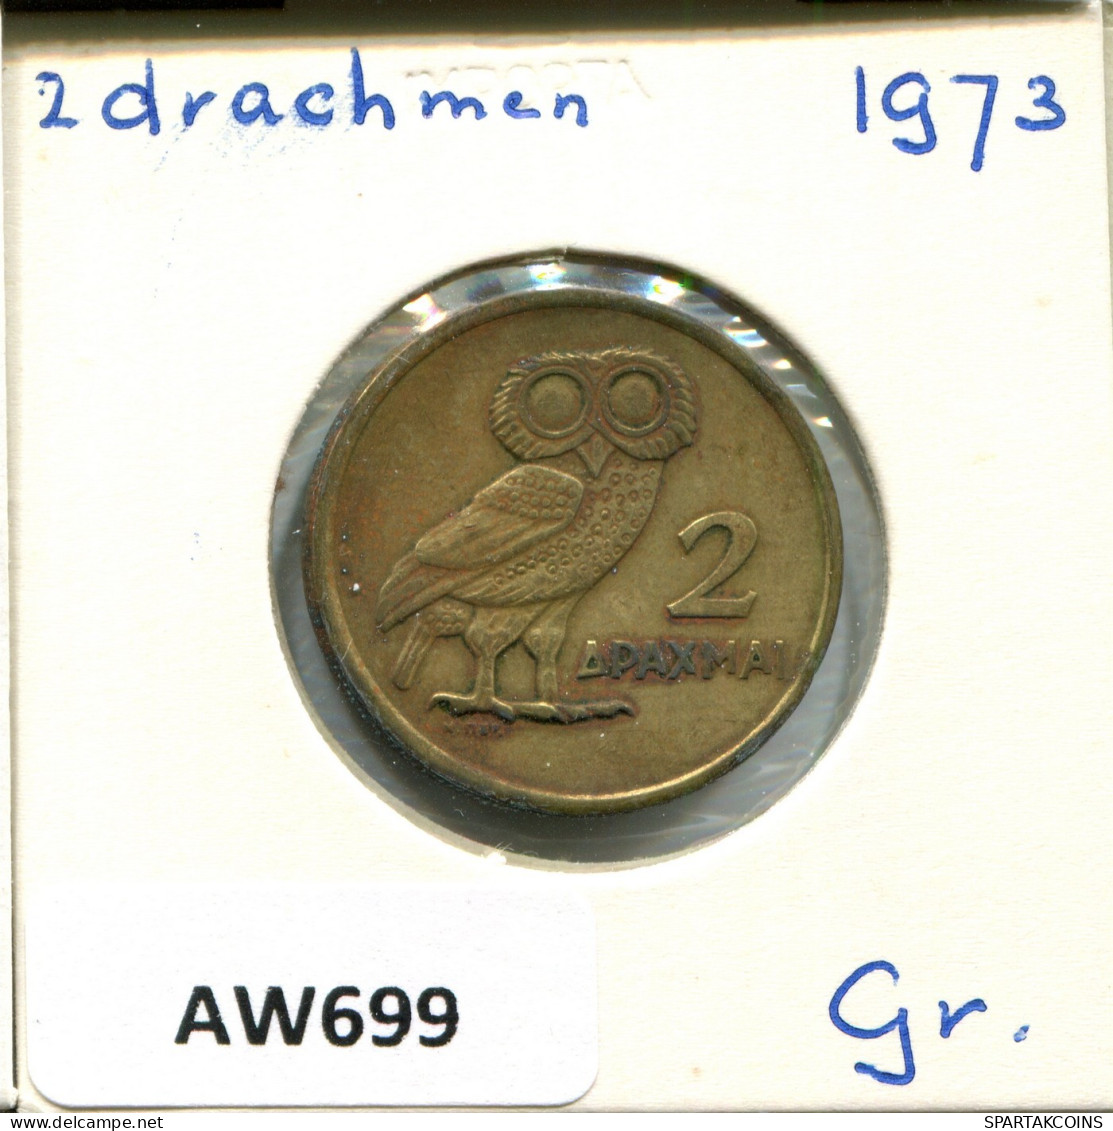 2 DRACHMES 1973 GREECE Coin #AW699.U.A - Grecia